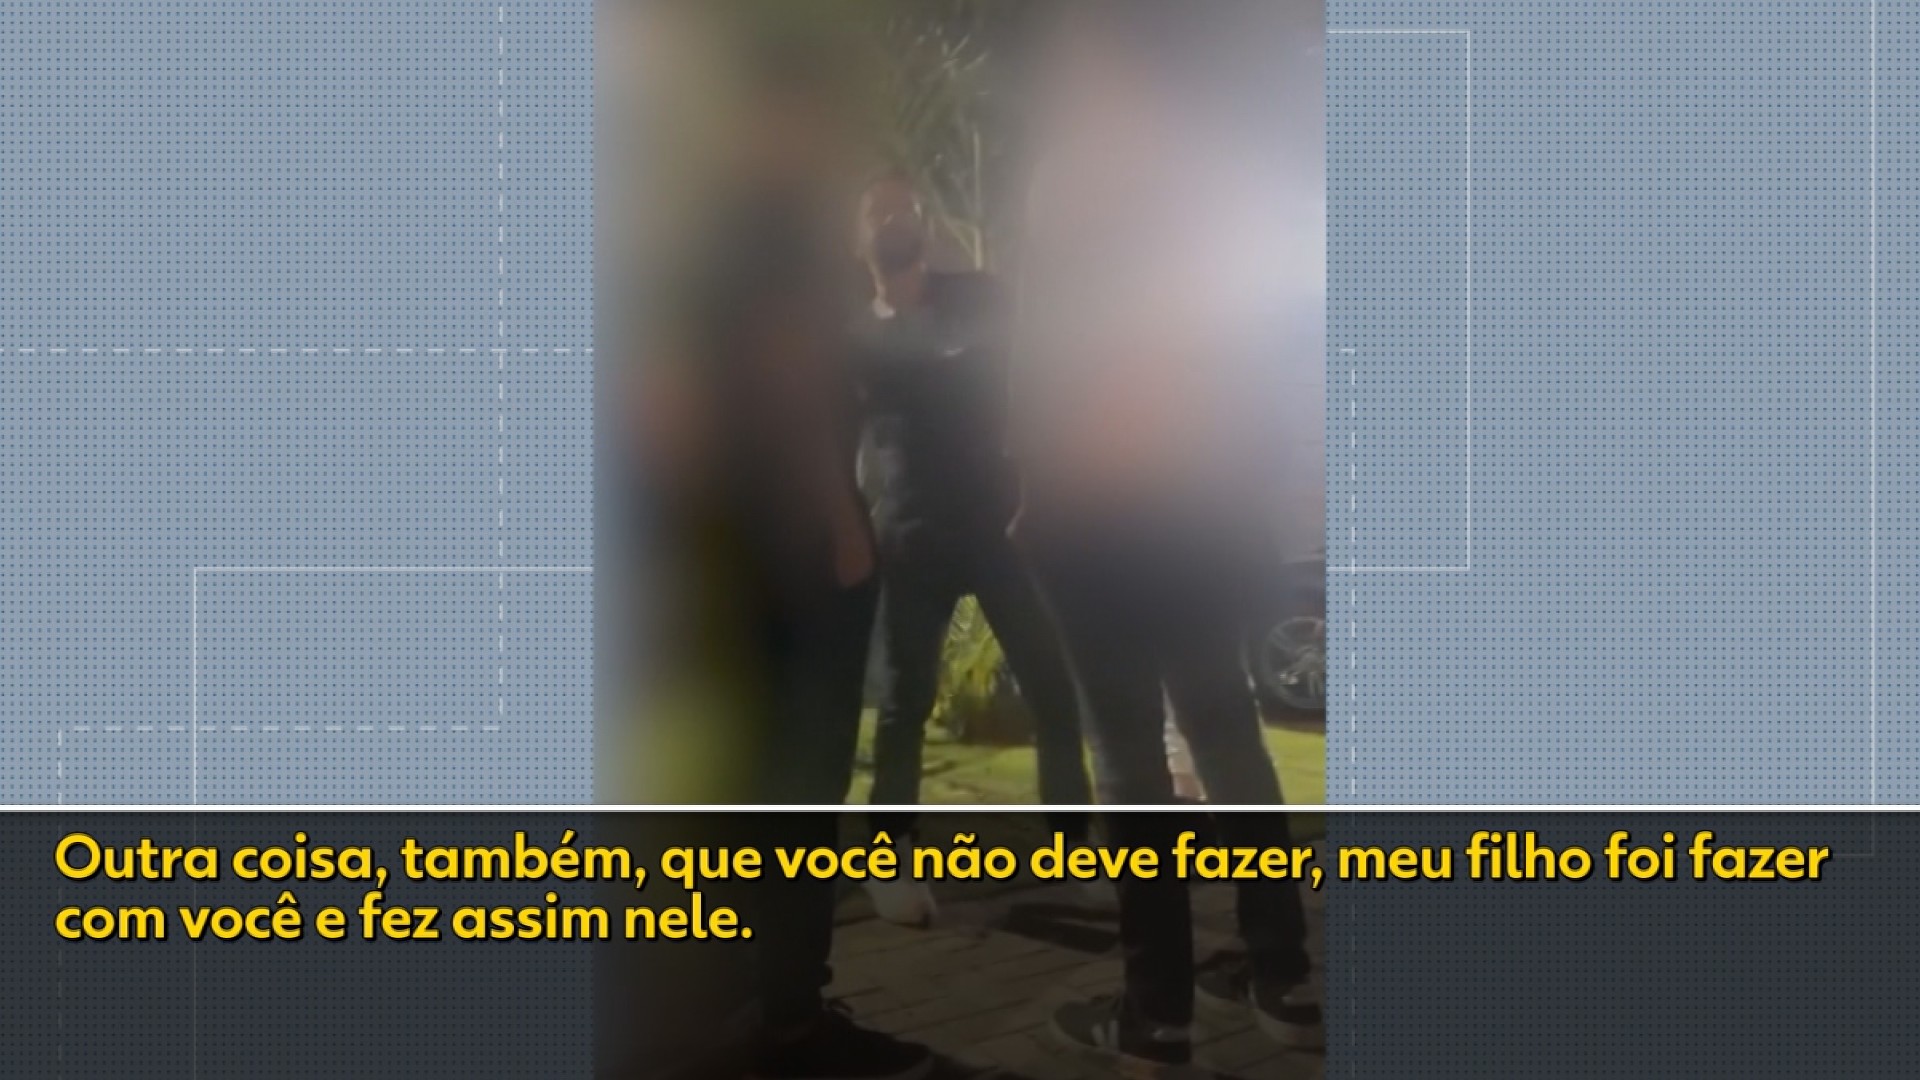 Vídeo mostra empresário de 42 anos dando soco em adolescente, em Curitiba; polícia investiga